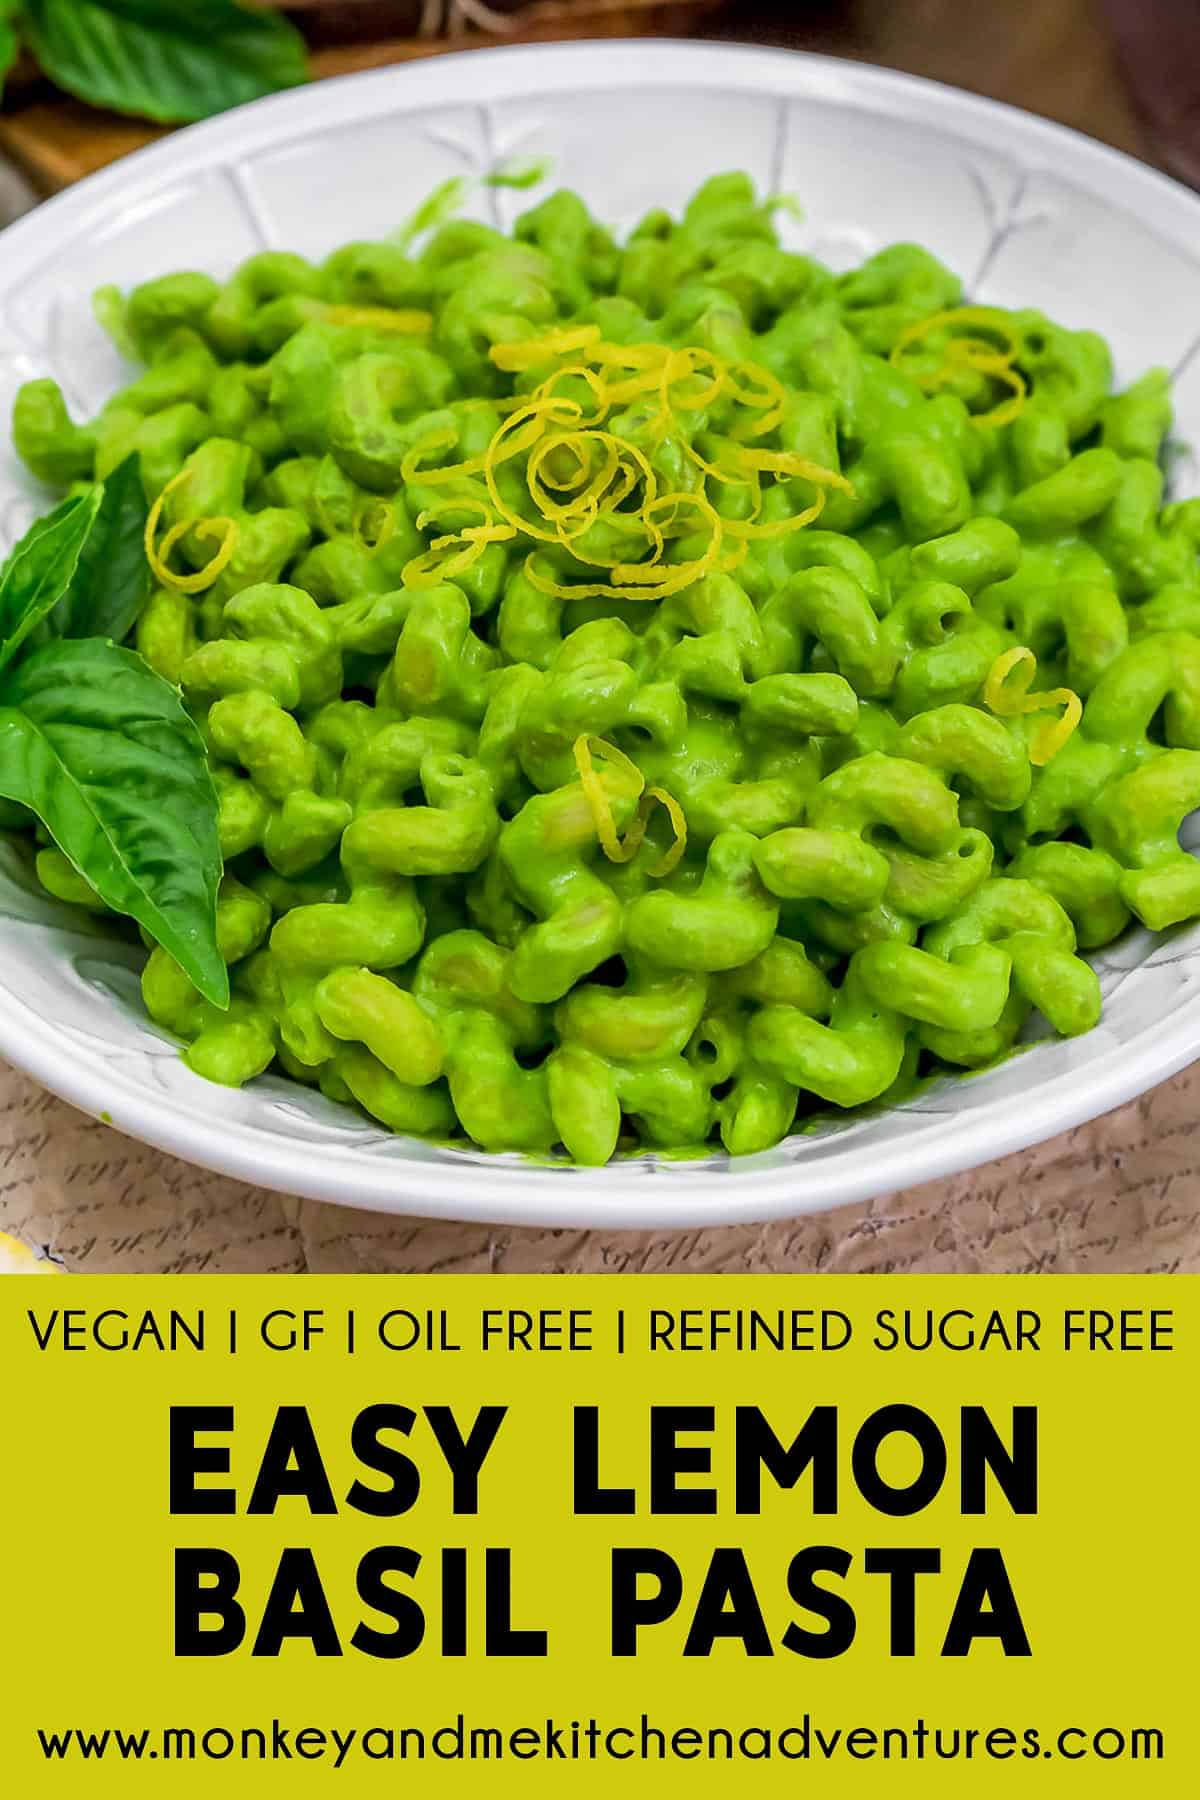 Easy Lemon Basil Pasta with text description